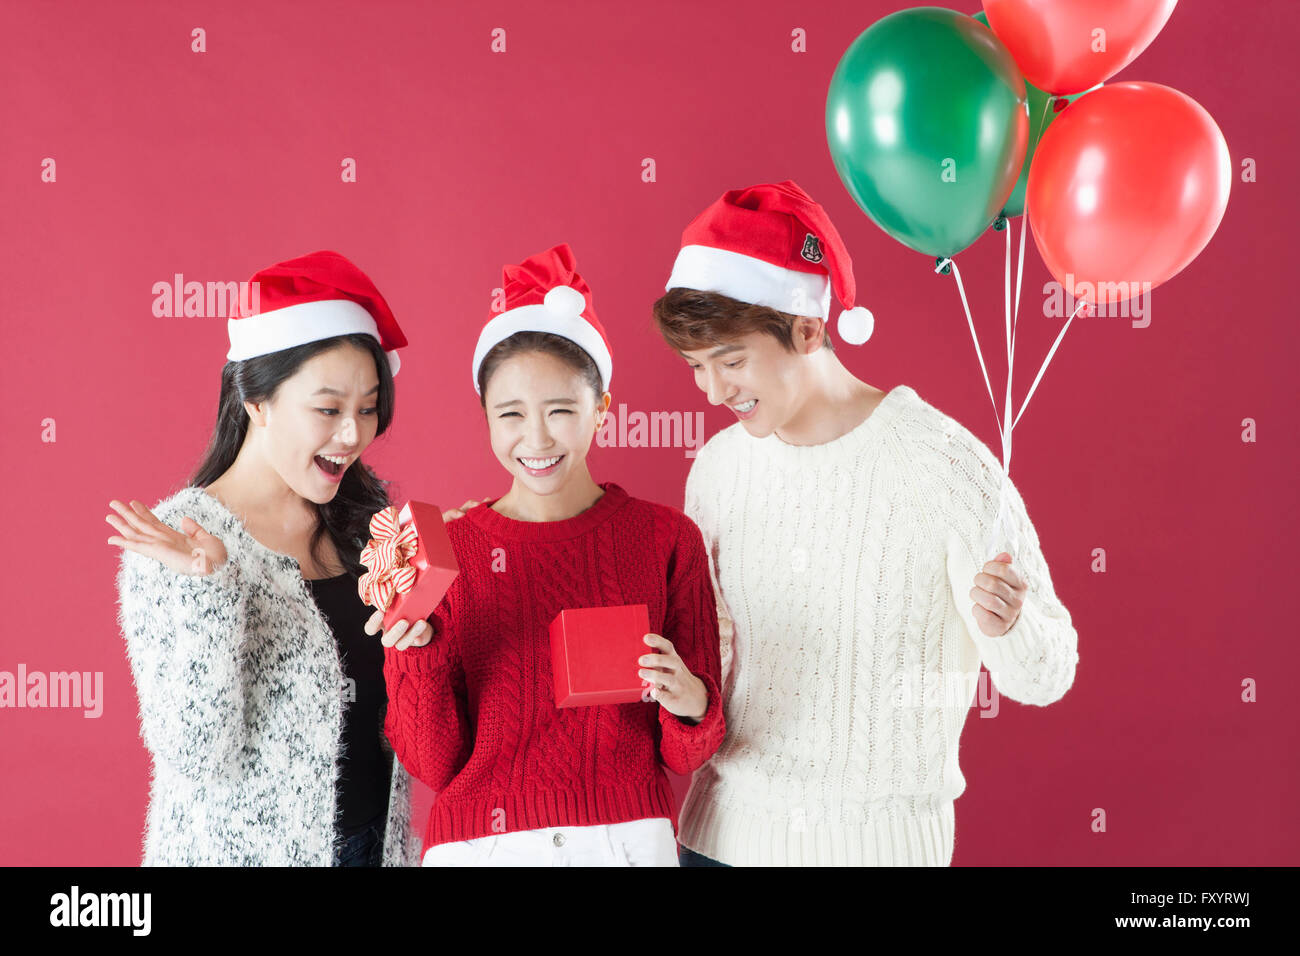 Portrait de trois jeunes smiling people wearing santa hats holding present fort et des ballons Banque D'Images